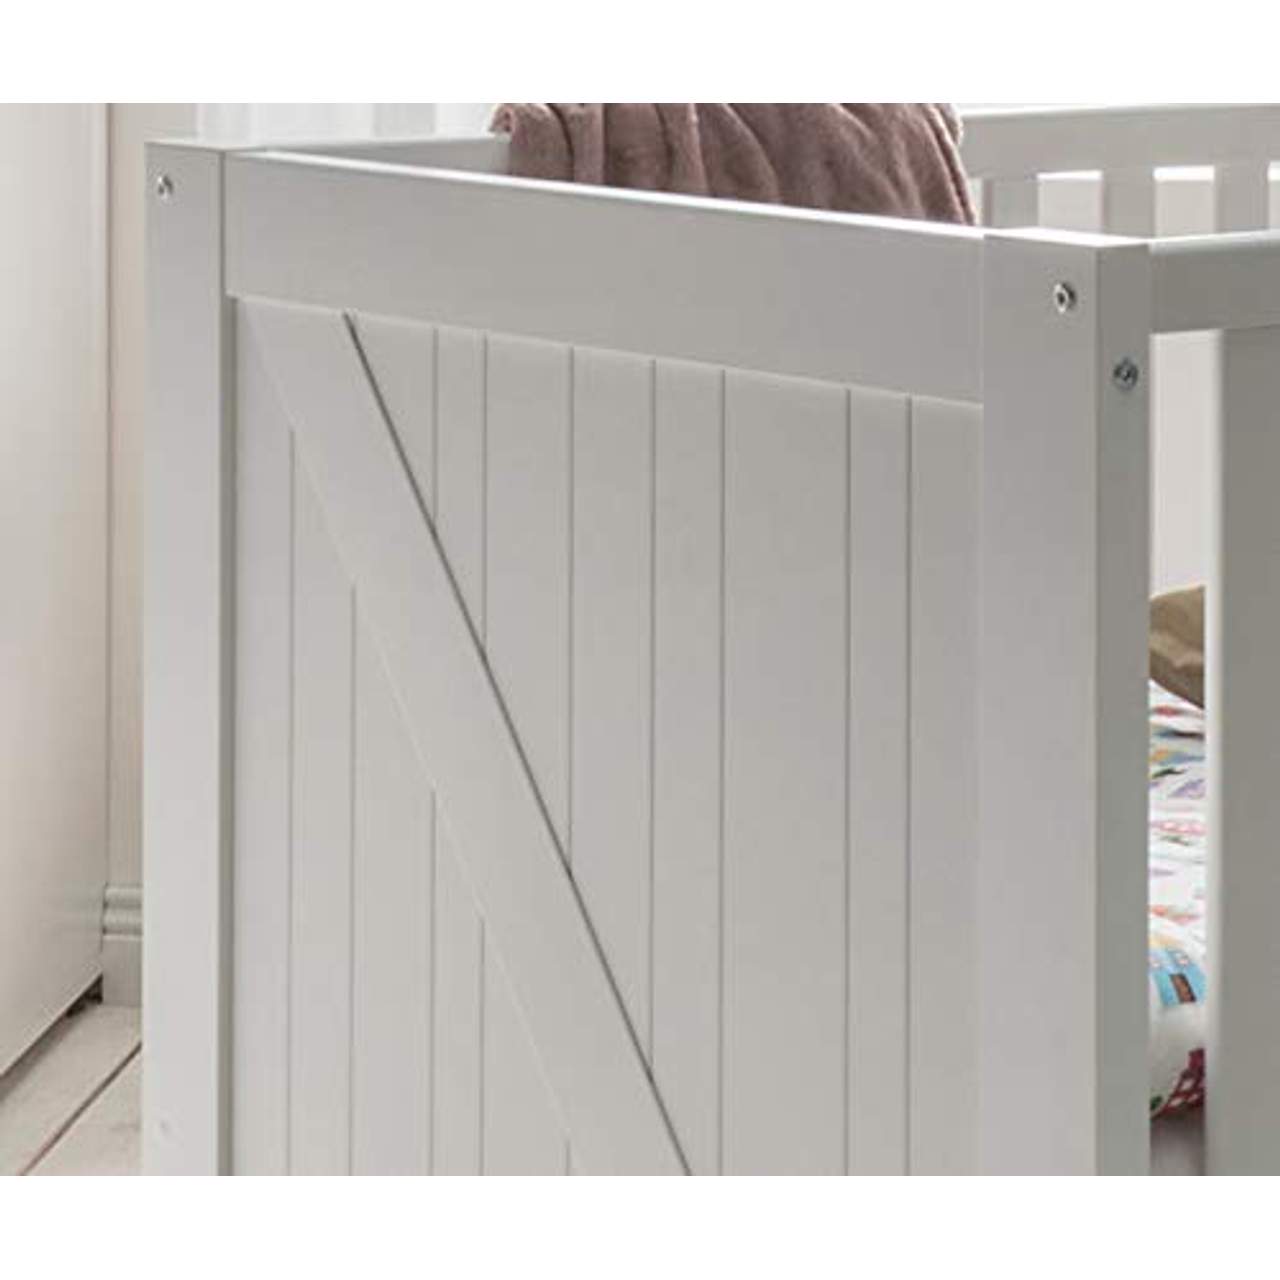 lifestyle4living Babyzimmer Komplett-Set in weiß